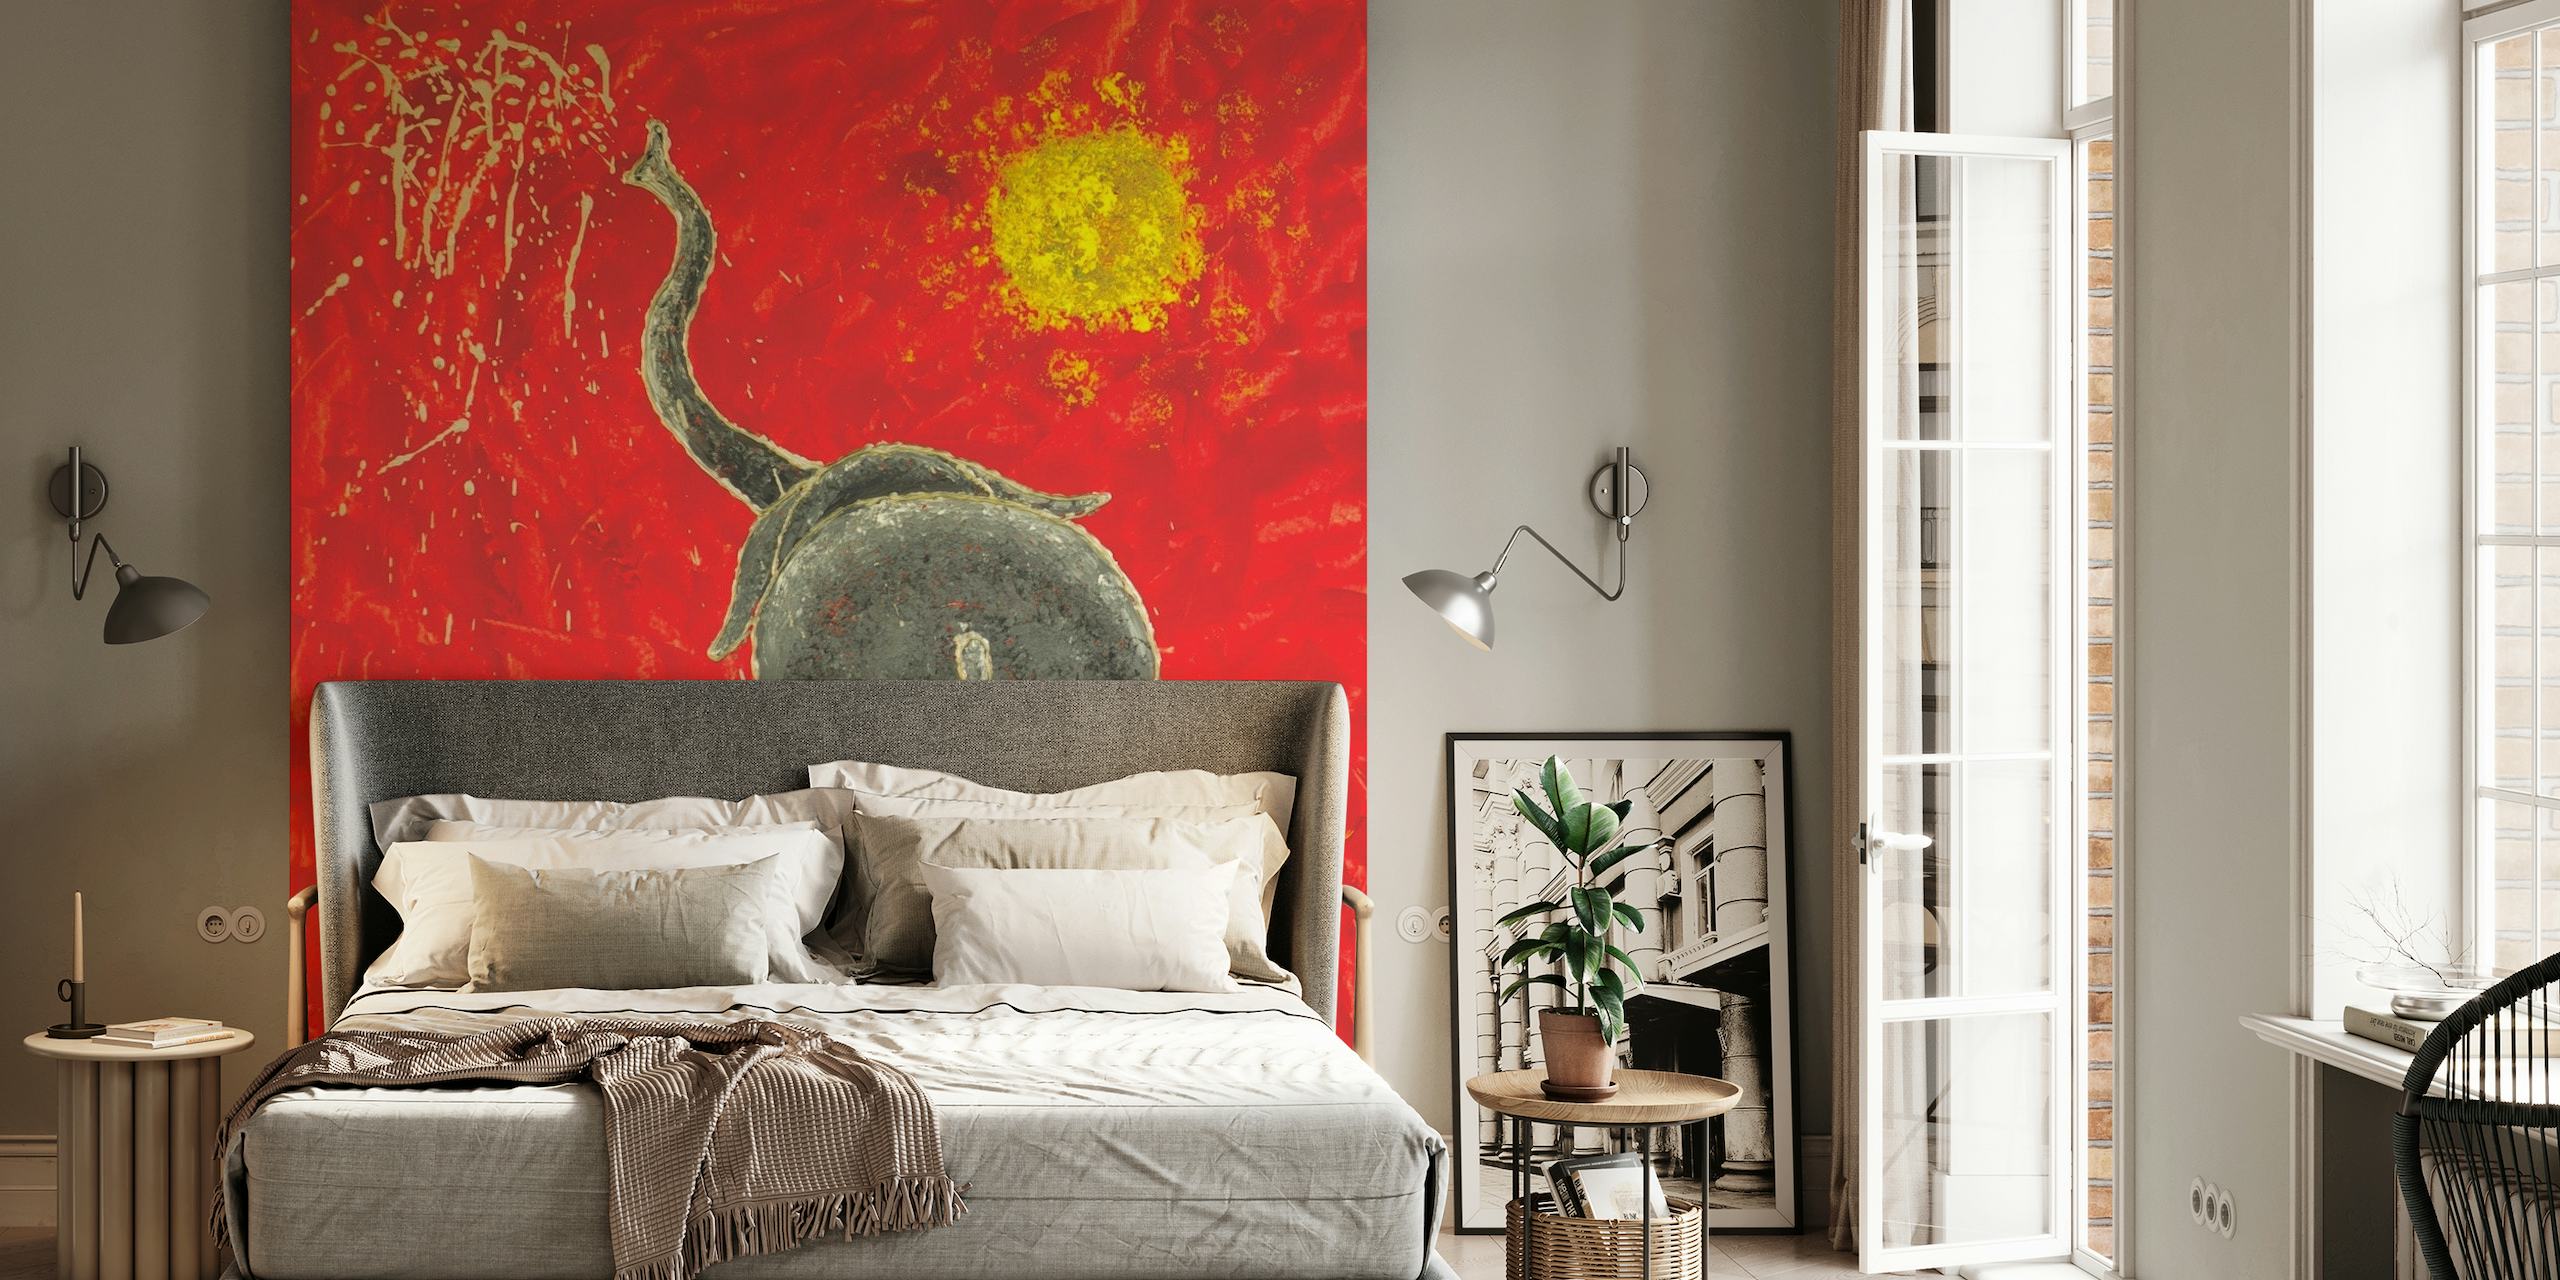 Mural artístico de un elefante juguetón en estilo abstracto con un fondo rojo y un sol amarillo